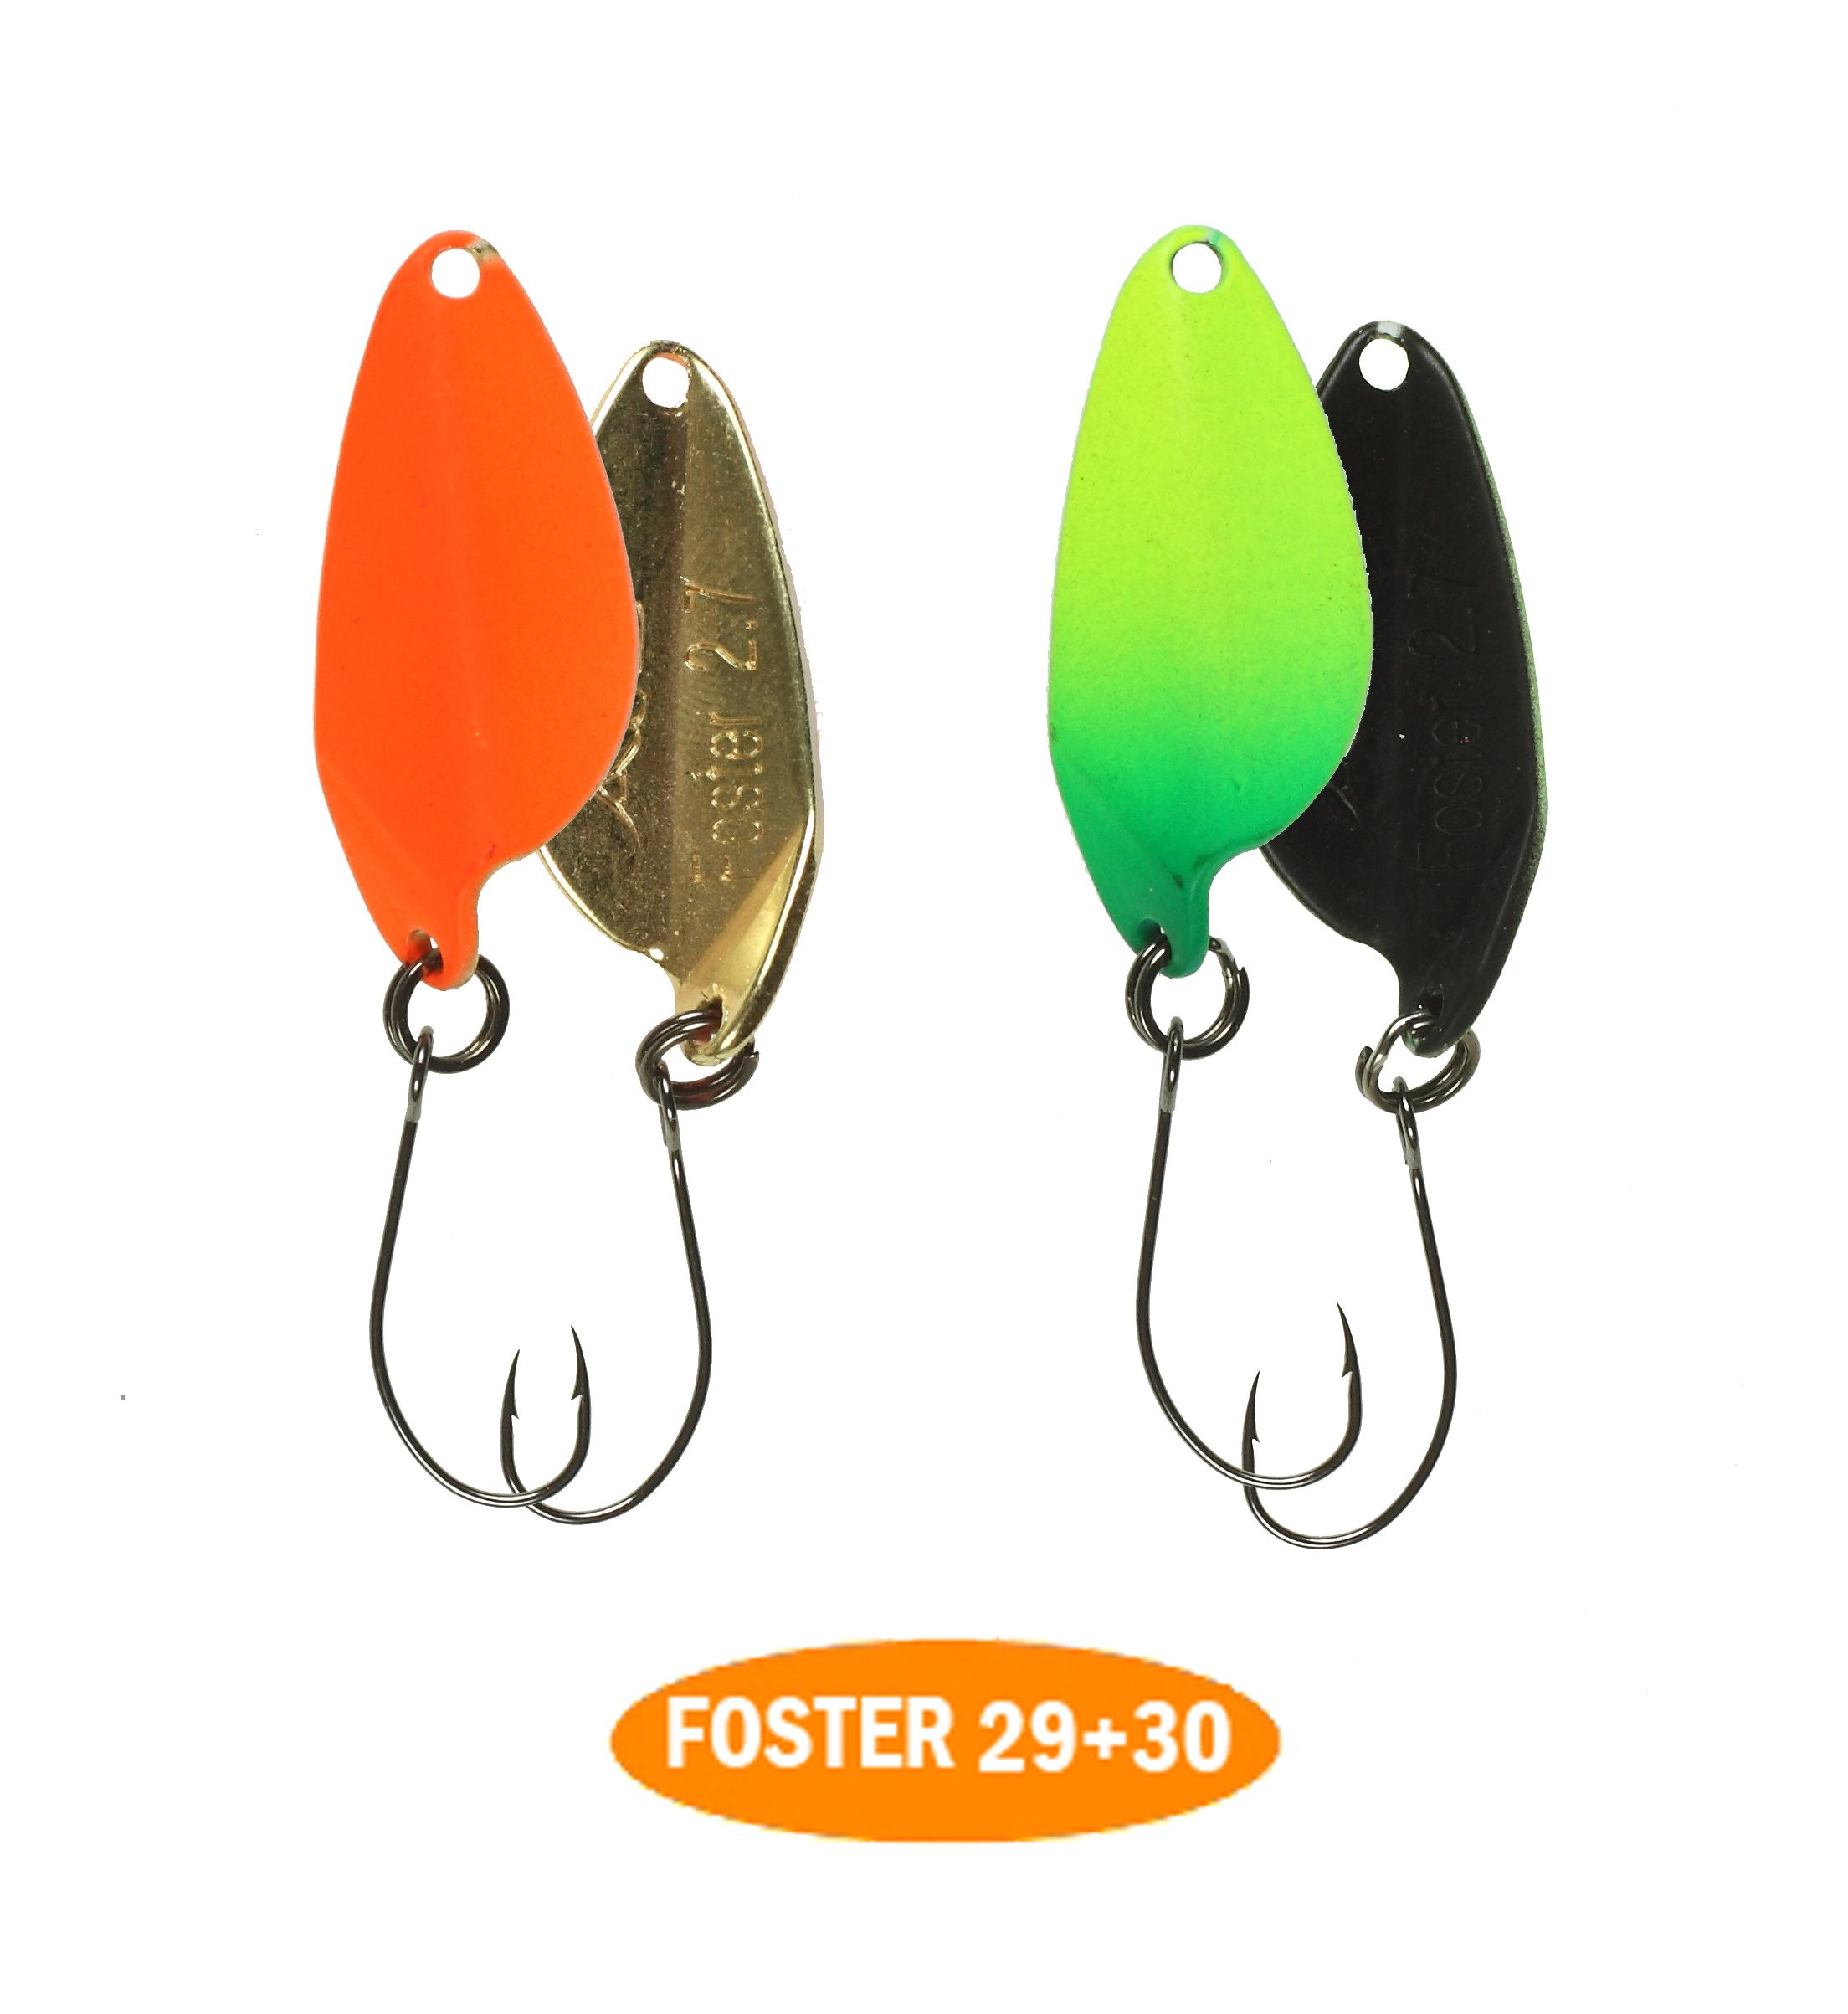 микроколебло  Foster  2.7g  цвет 29+30  с безбородым крючком  (уп. 2шт.)